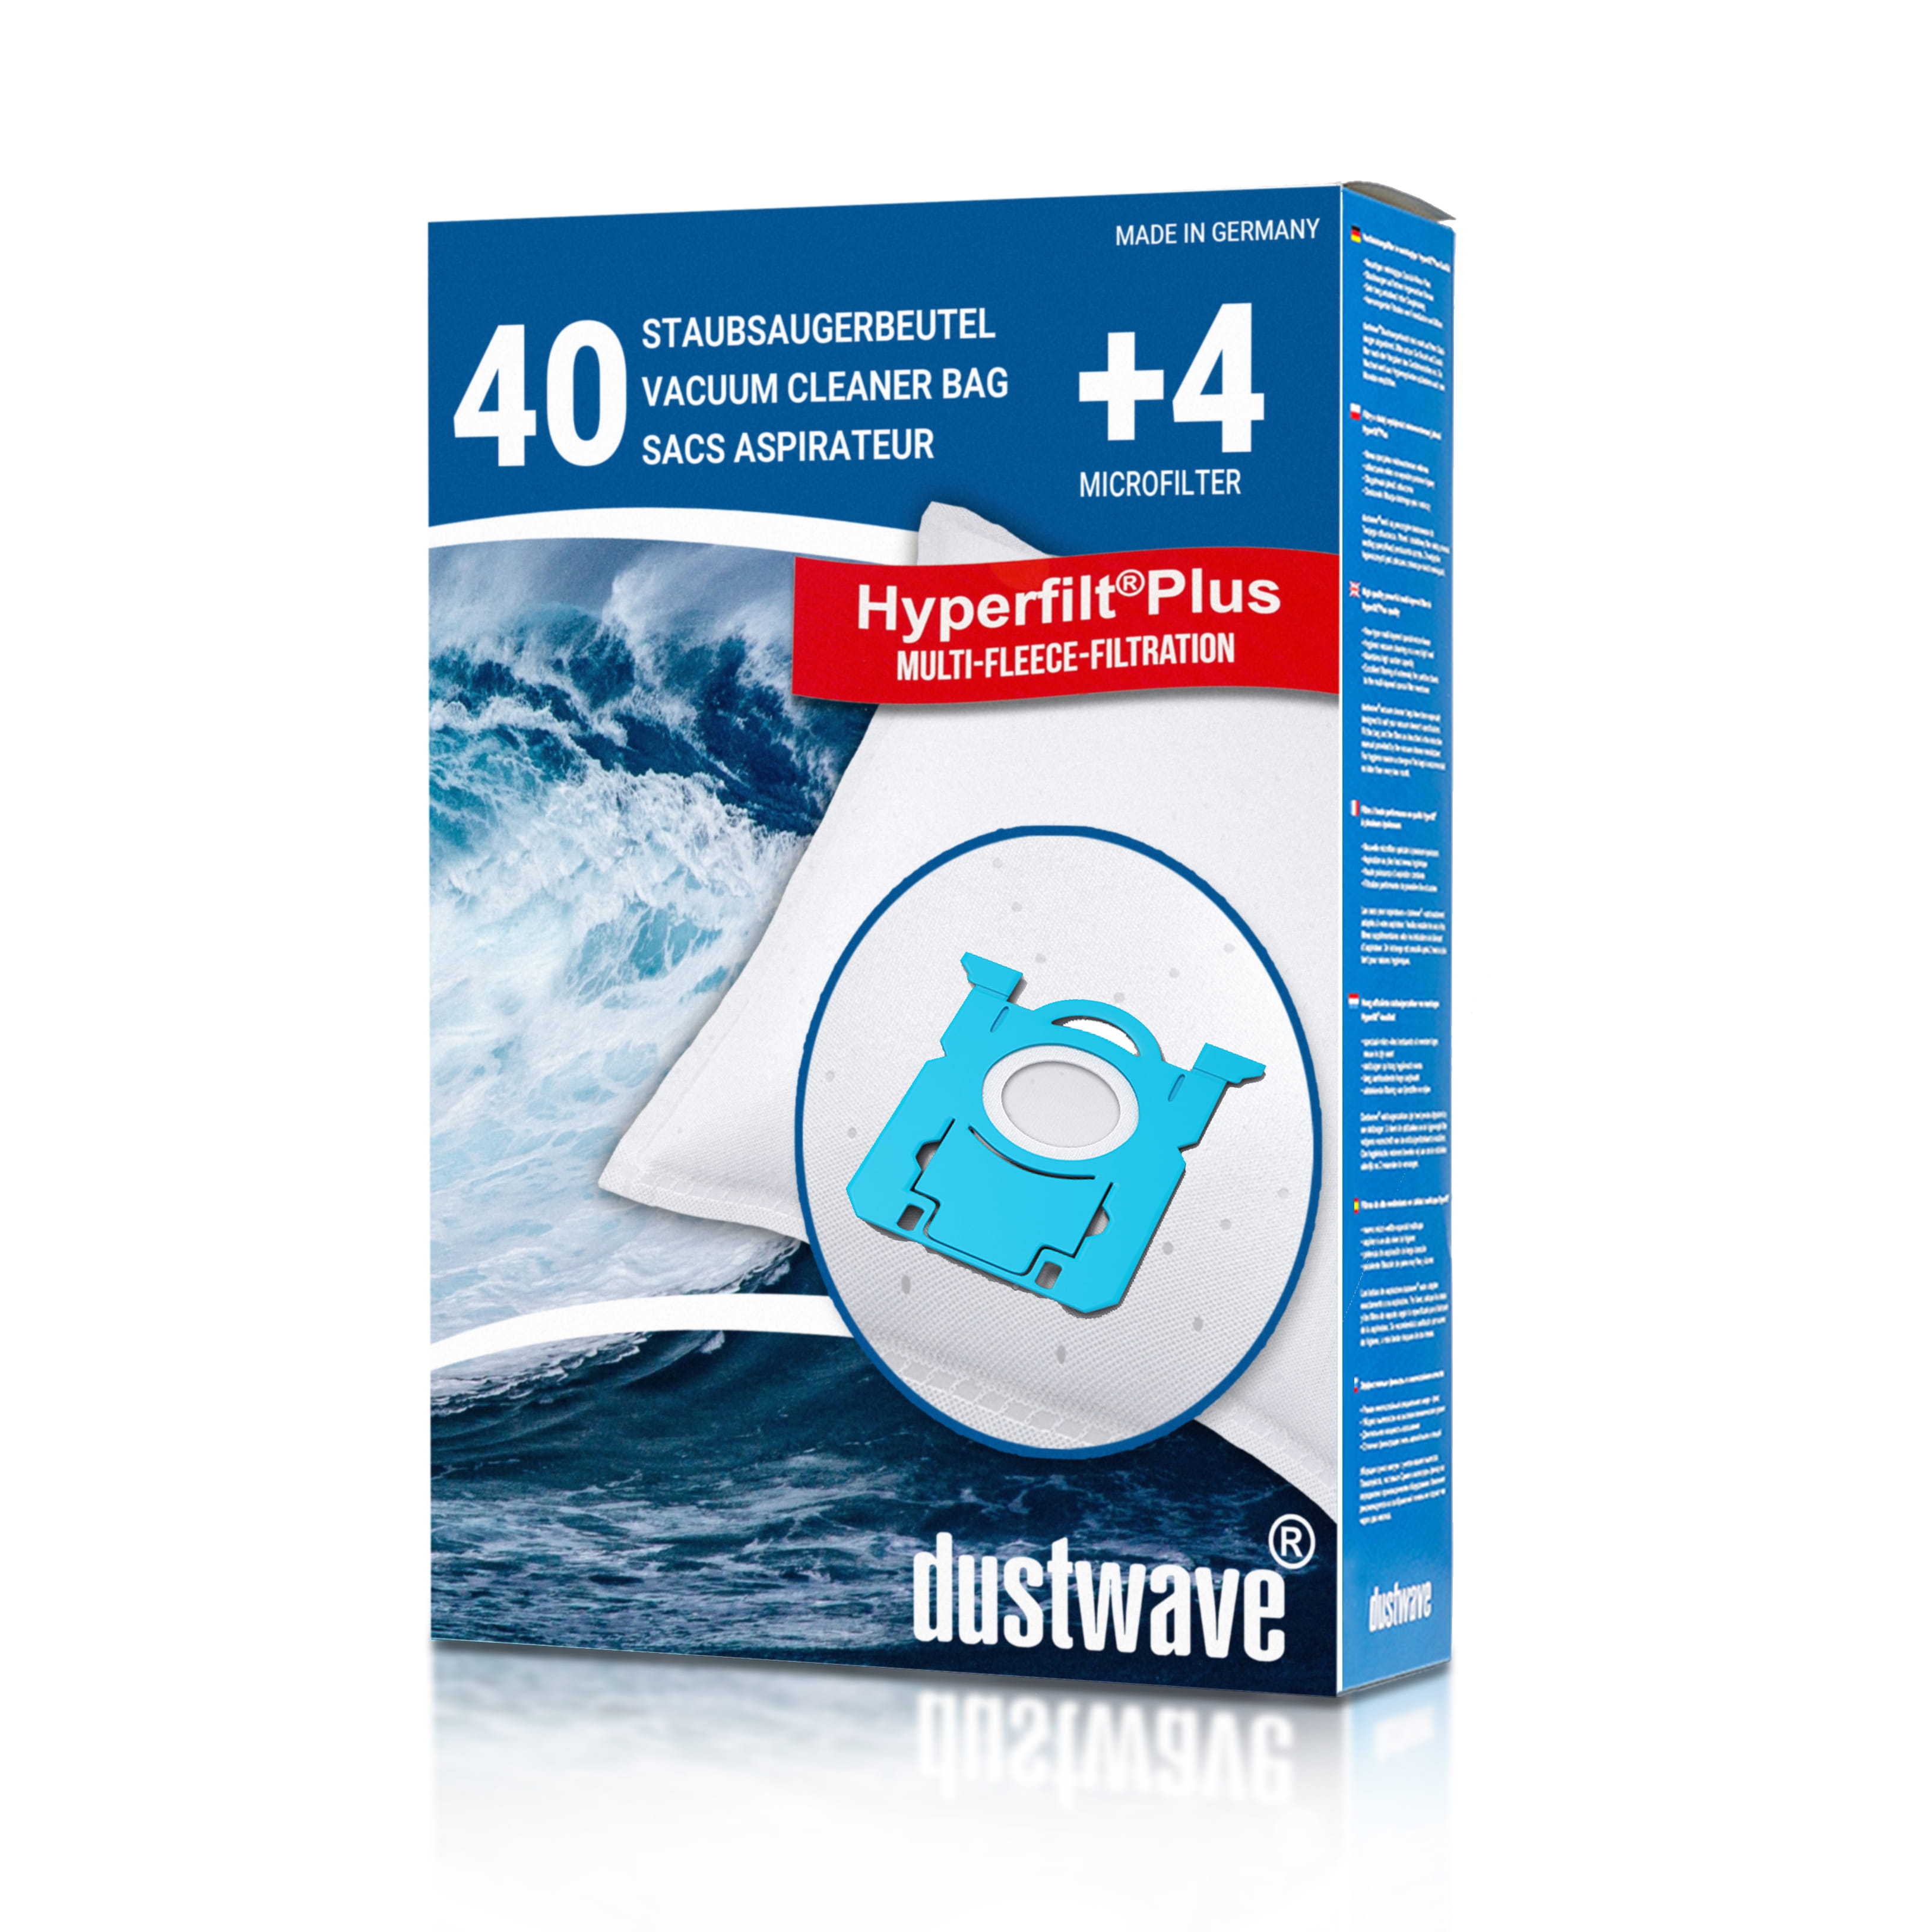 Dustwave® 40 Staubsaugerbeutel für AEG VX7-1-BO-A - hocheffizient, mehrlagiges Mikrovlies mit Hygieneverschluss - Made in Germany